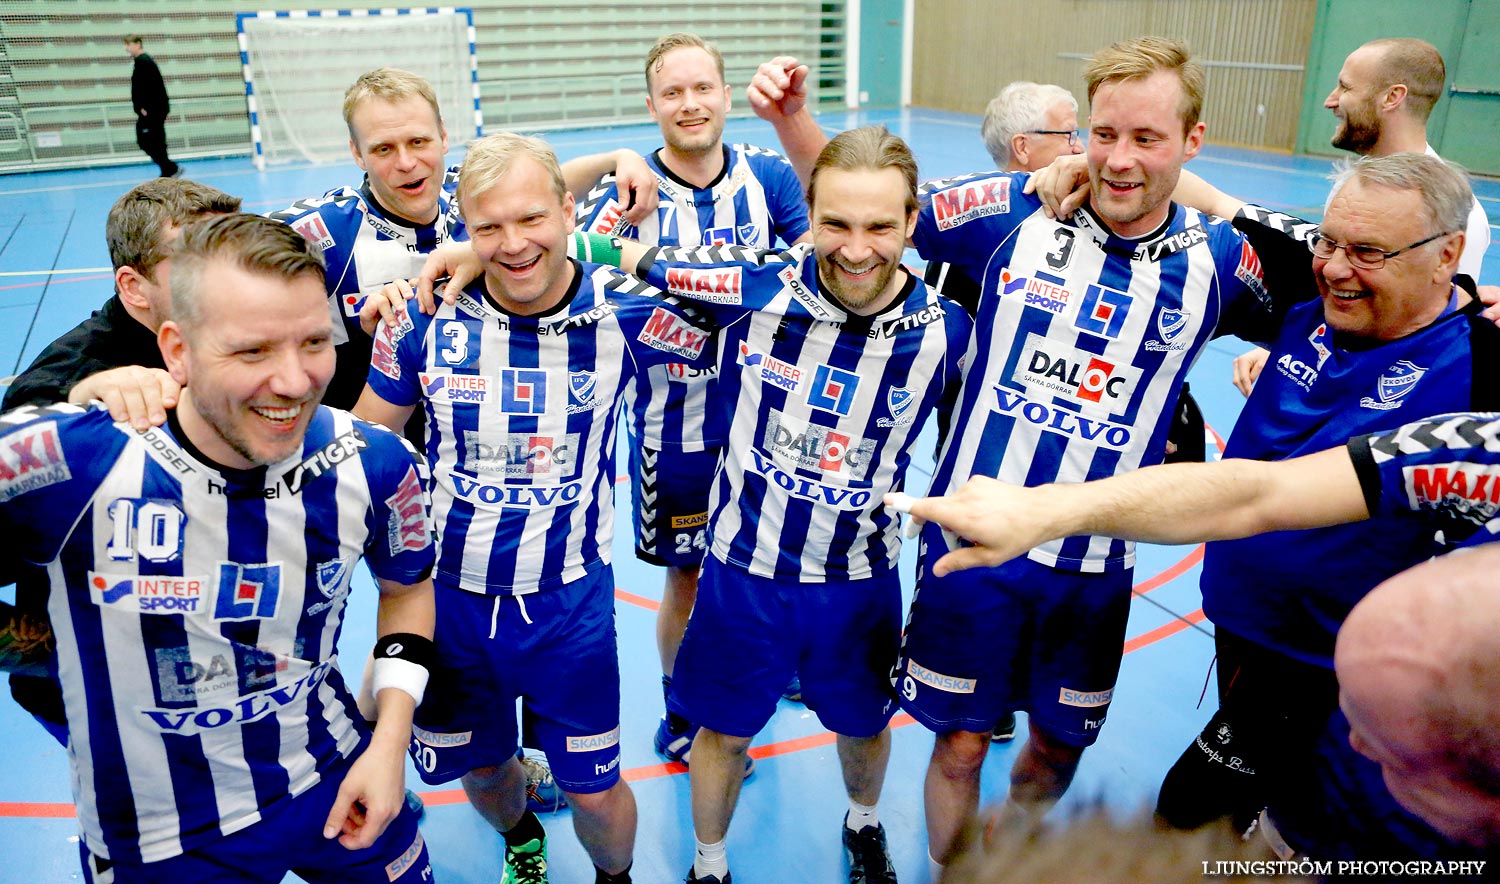 Trim-SM Herrar Bronsmatch Västra Frölunda IF-IFK Skövde HK 11-20,herr,Arena Skövde,Skövde,Sverige,Handboll,,2015,117090